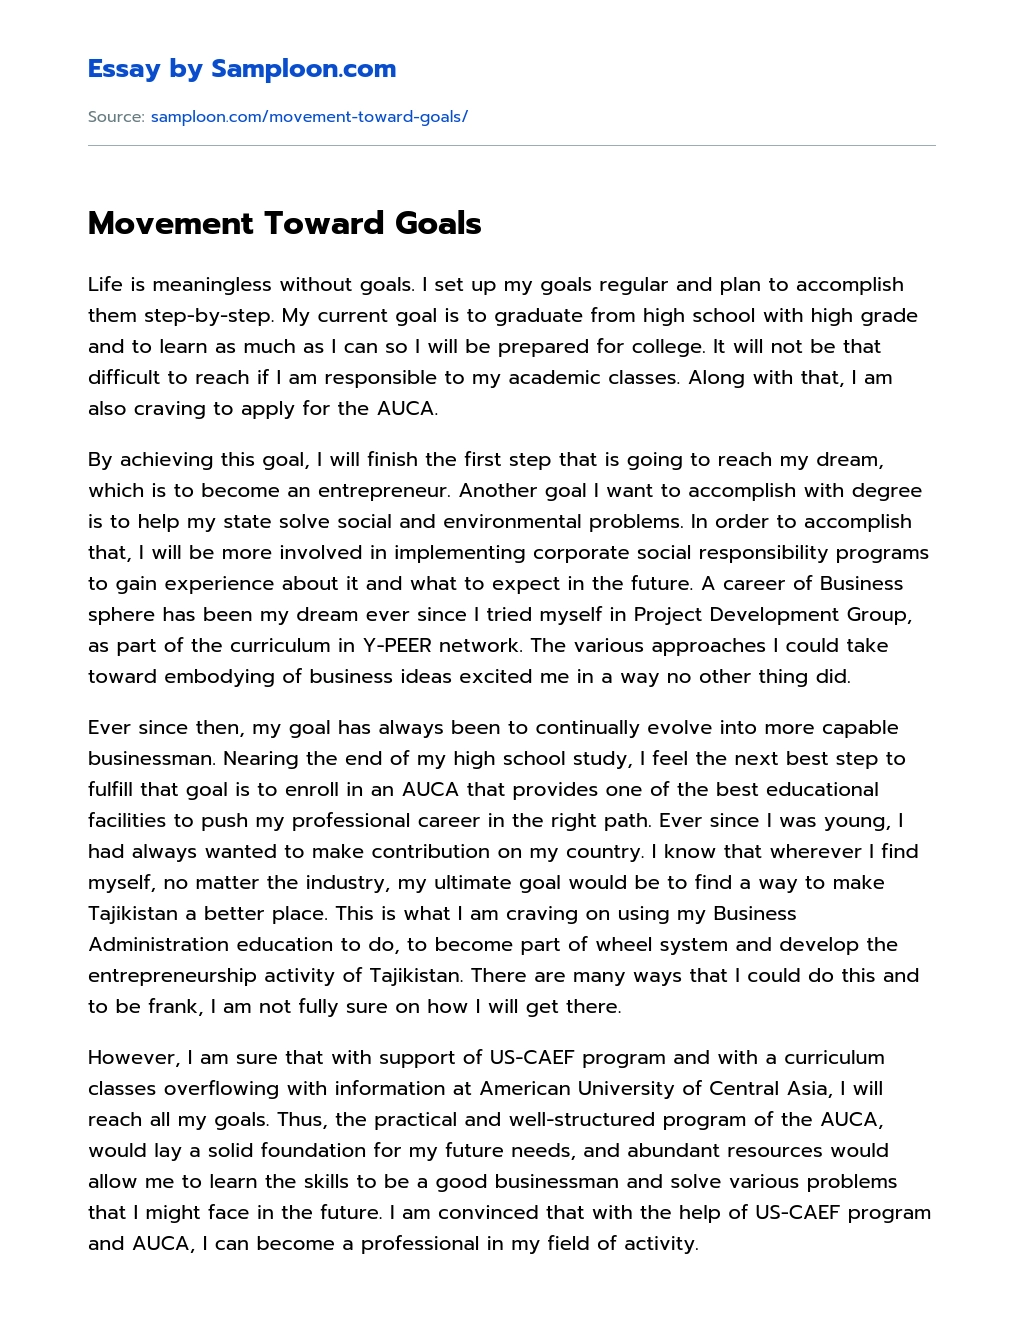 Movement Toward Goals essay